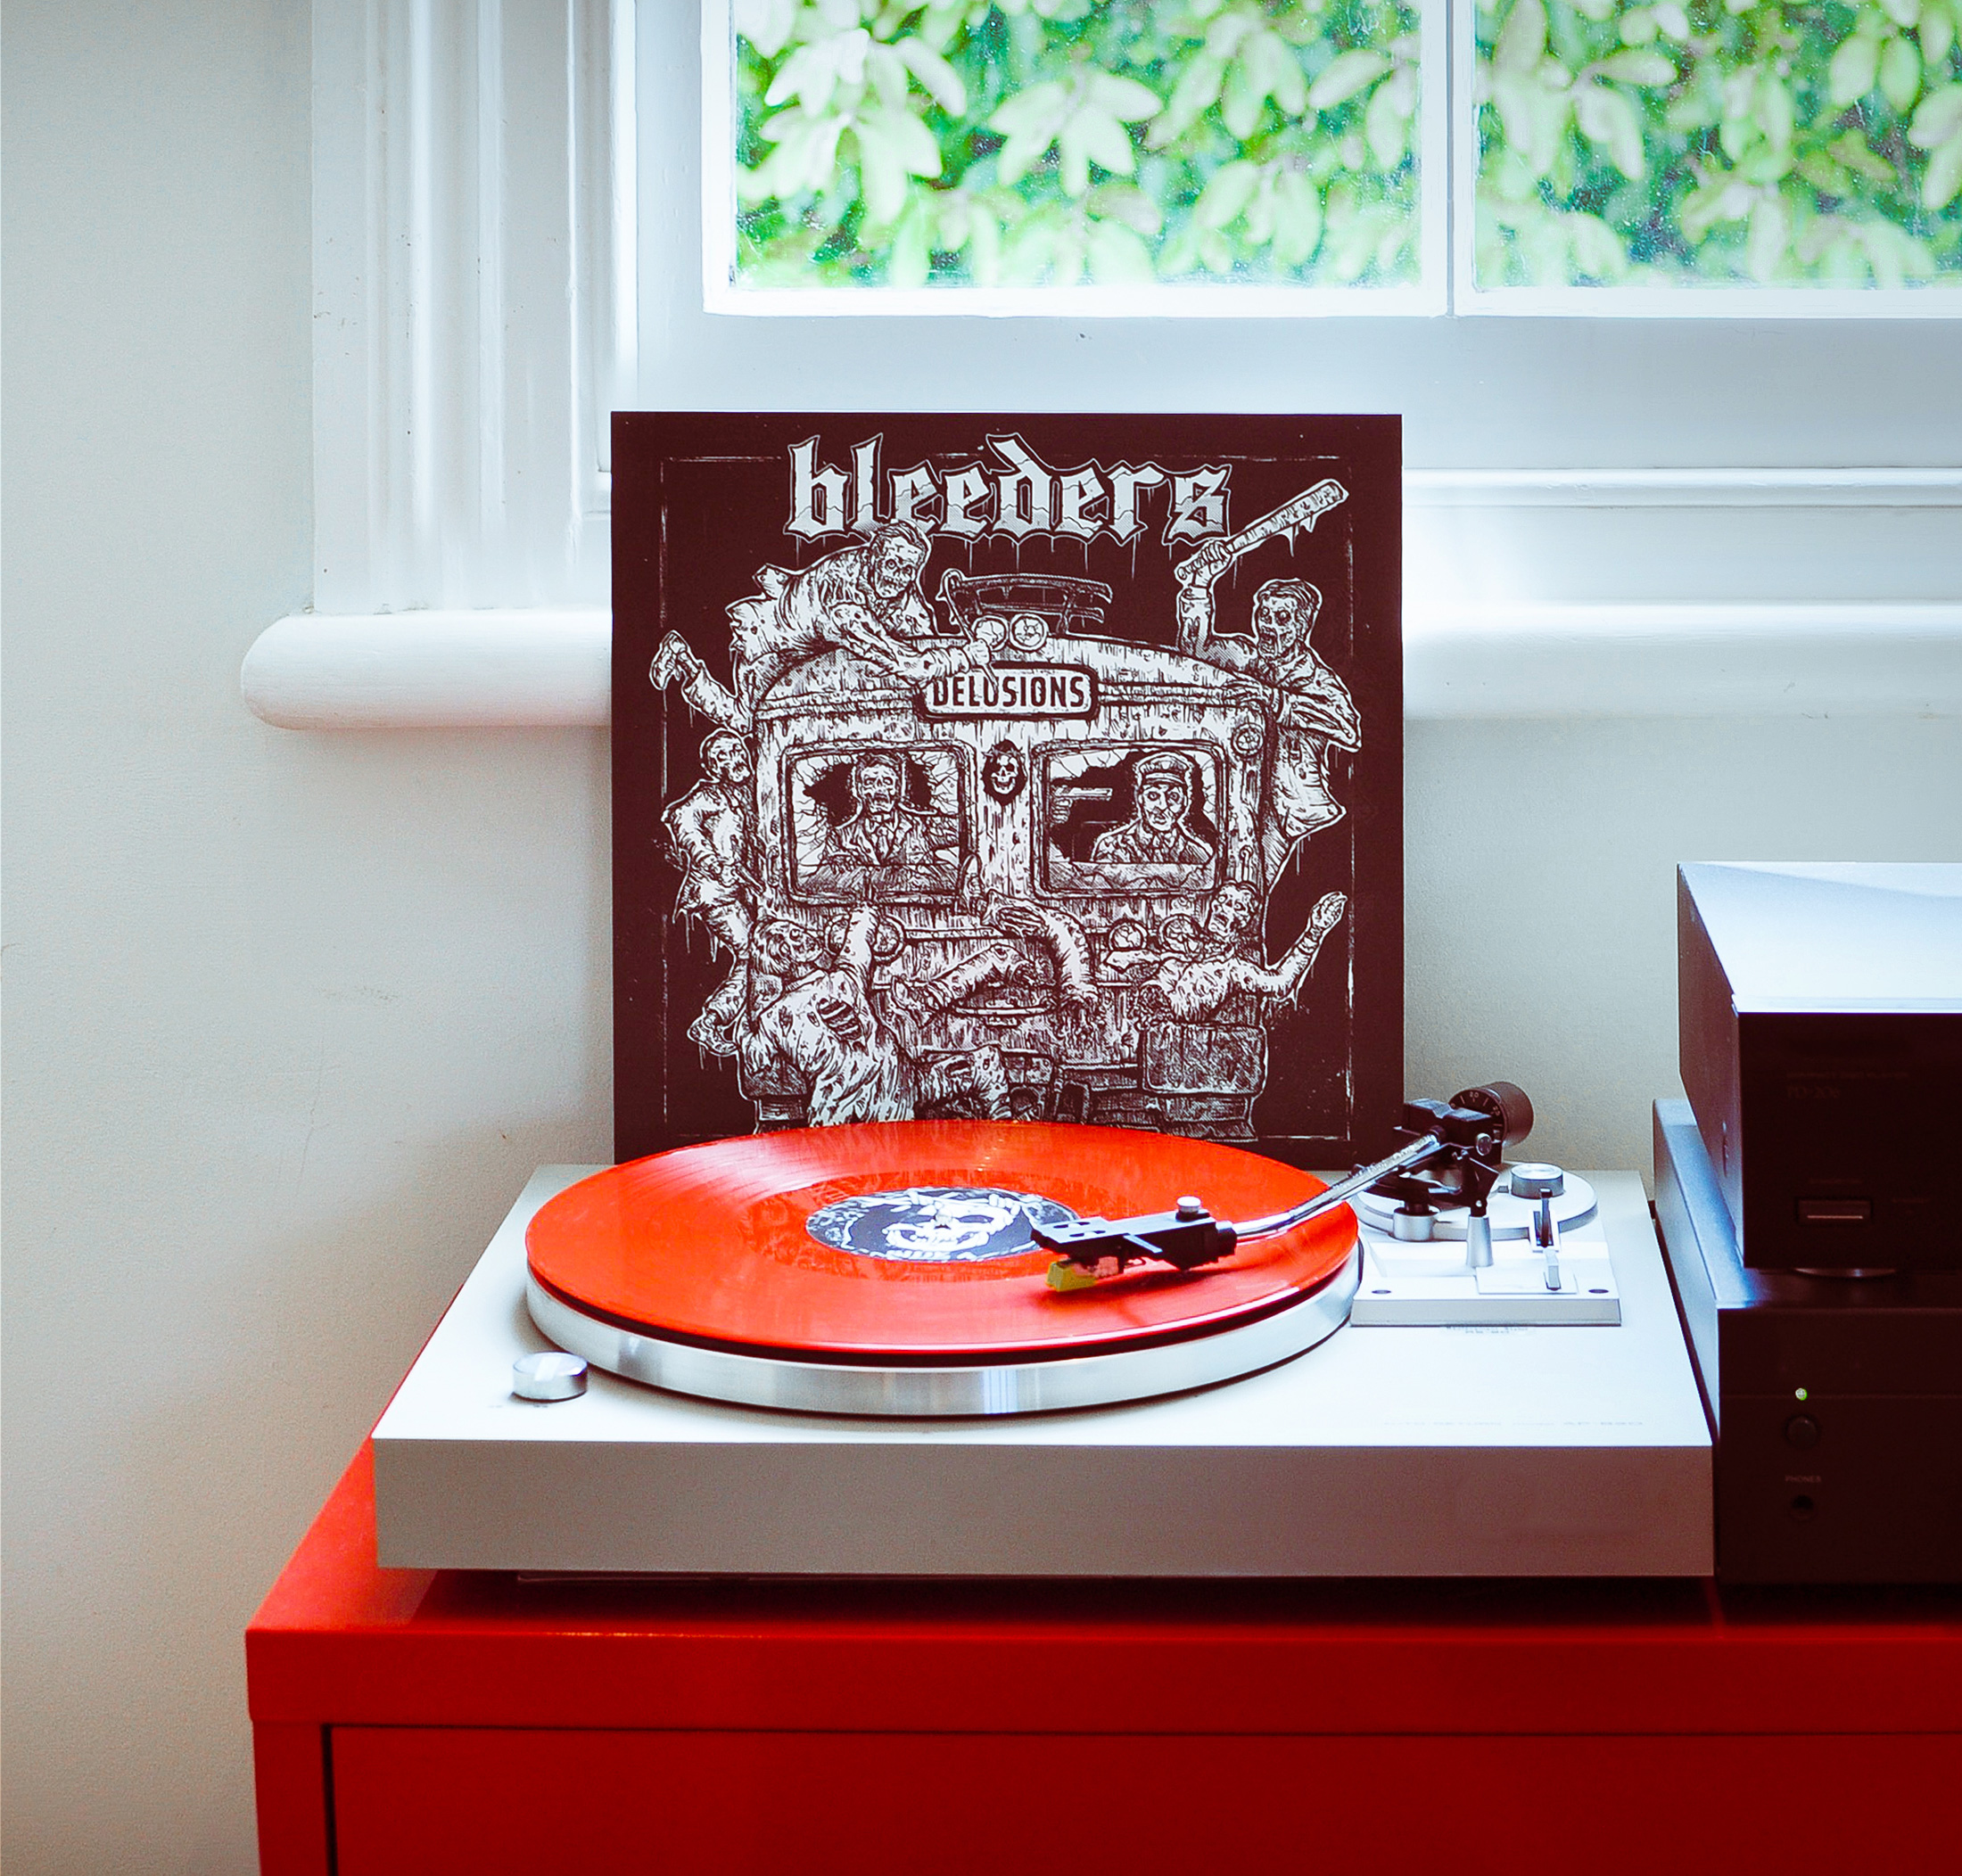 TheBleeders - Vinyl artwork